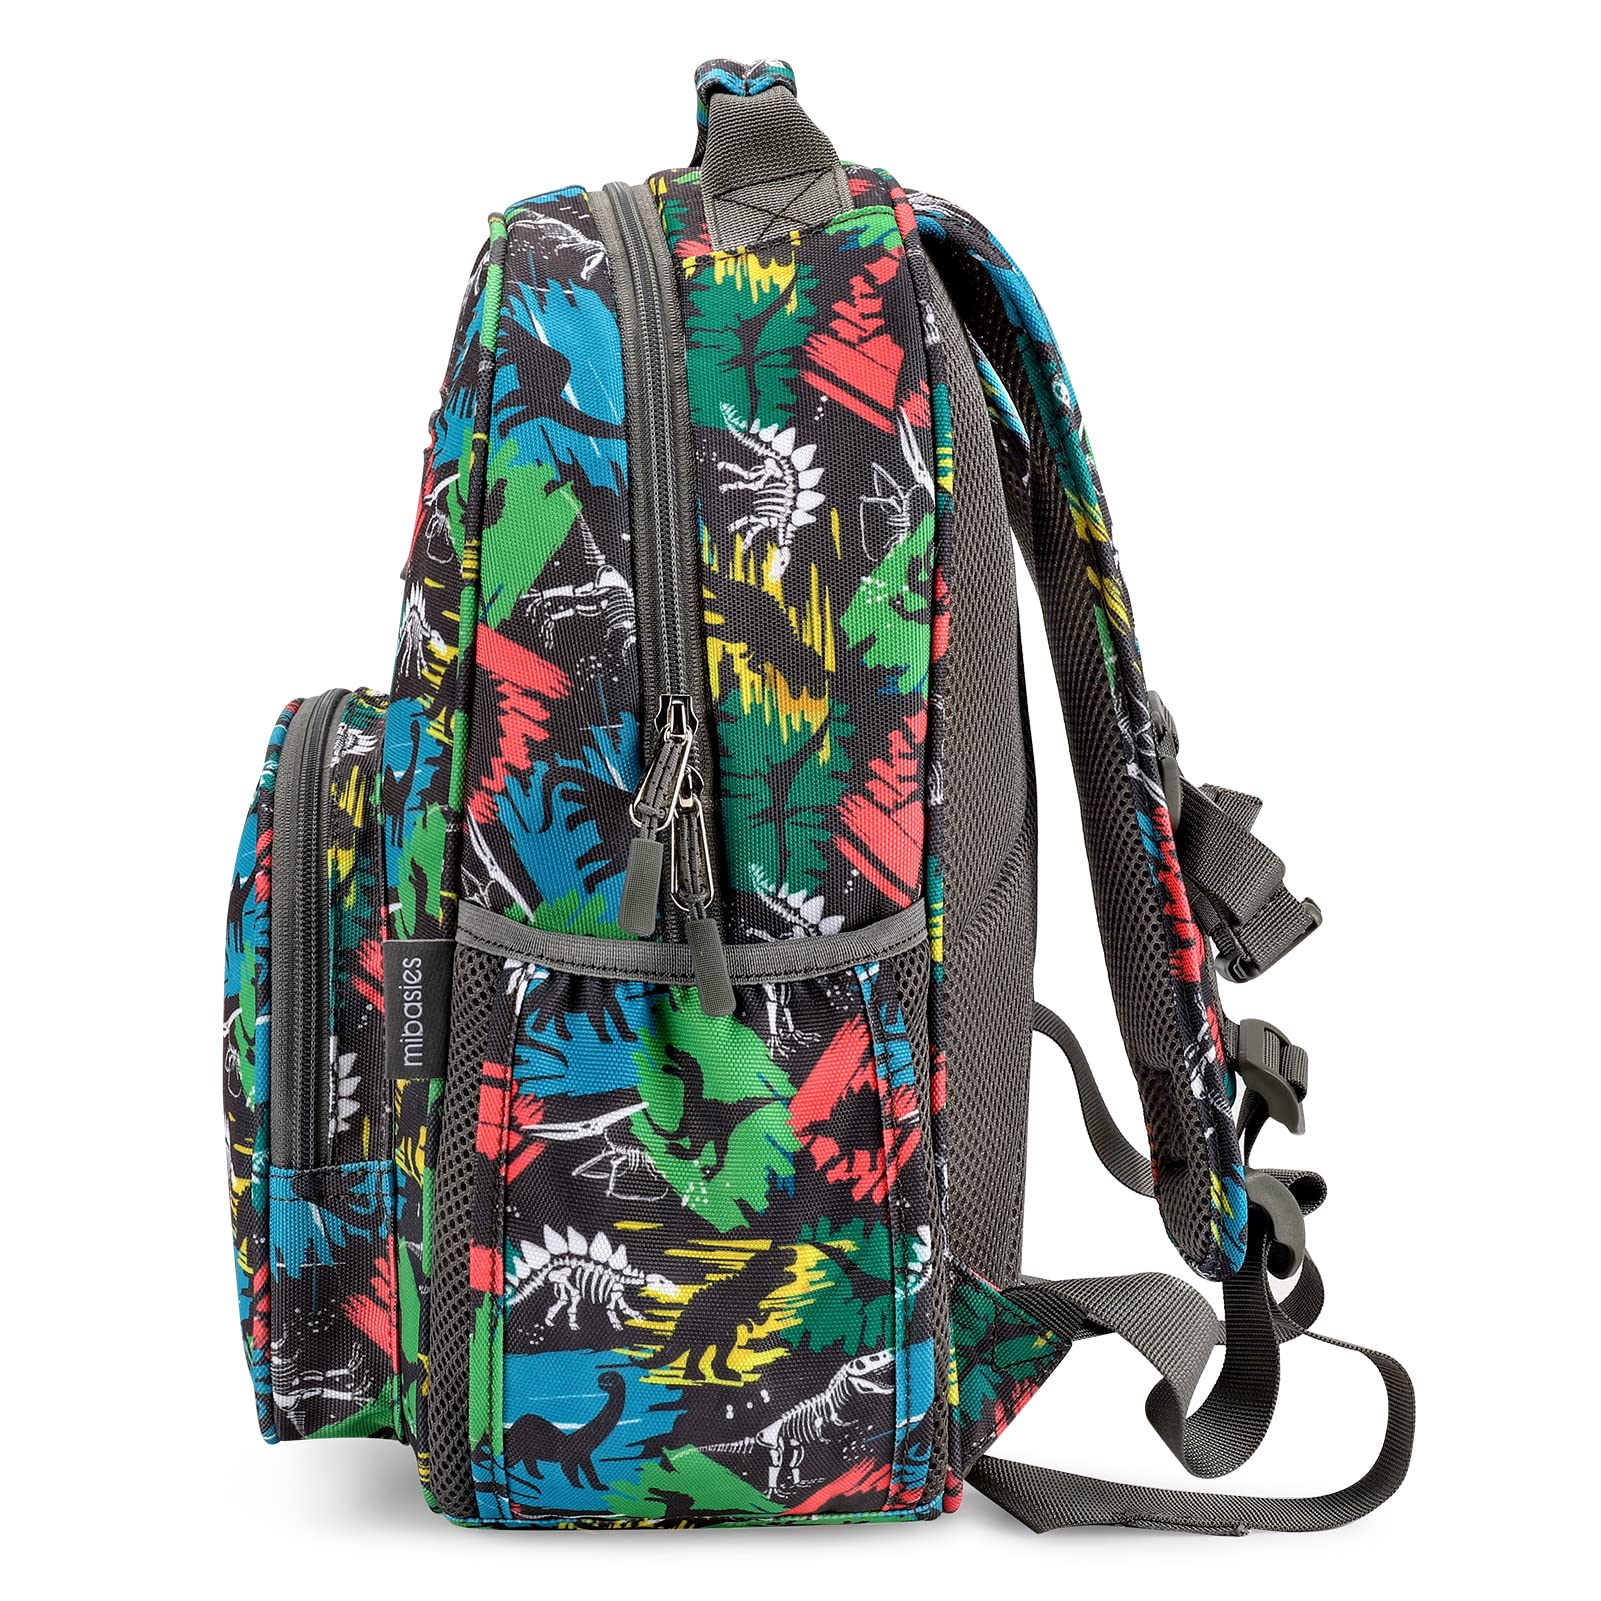 Mr. Dino Backpack schoolbag Mibasies 